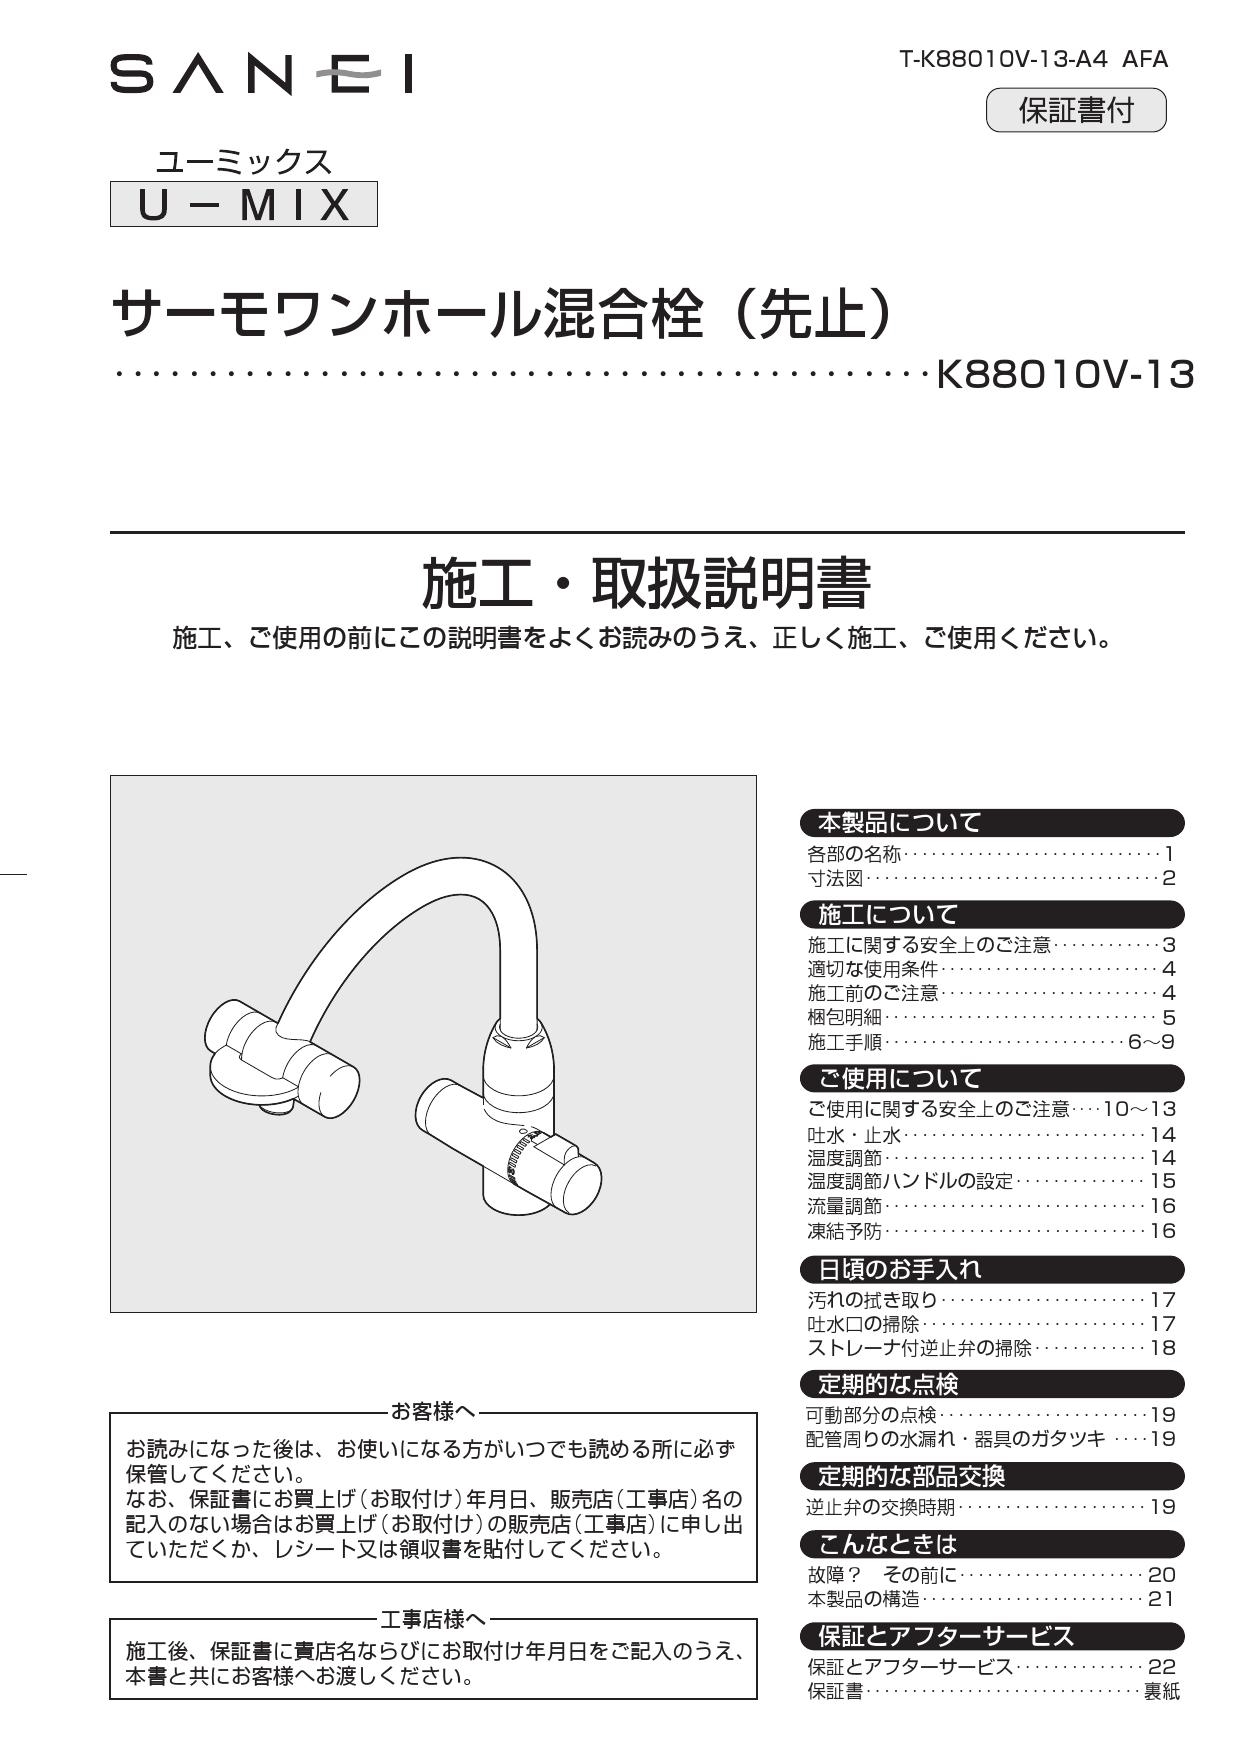 信頼】 三栄 SANEI U-MIX サーモワンホール混合栓 先止 K88010V-13